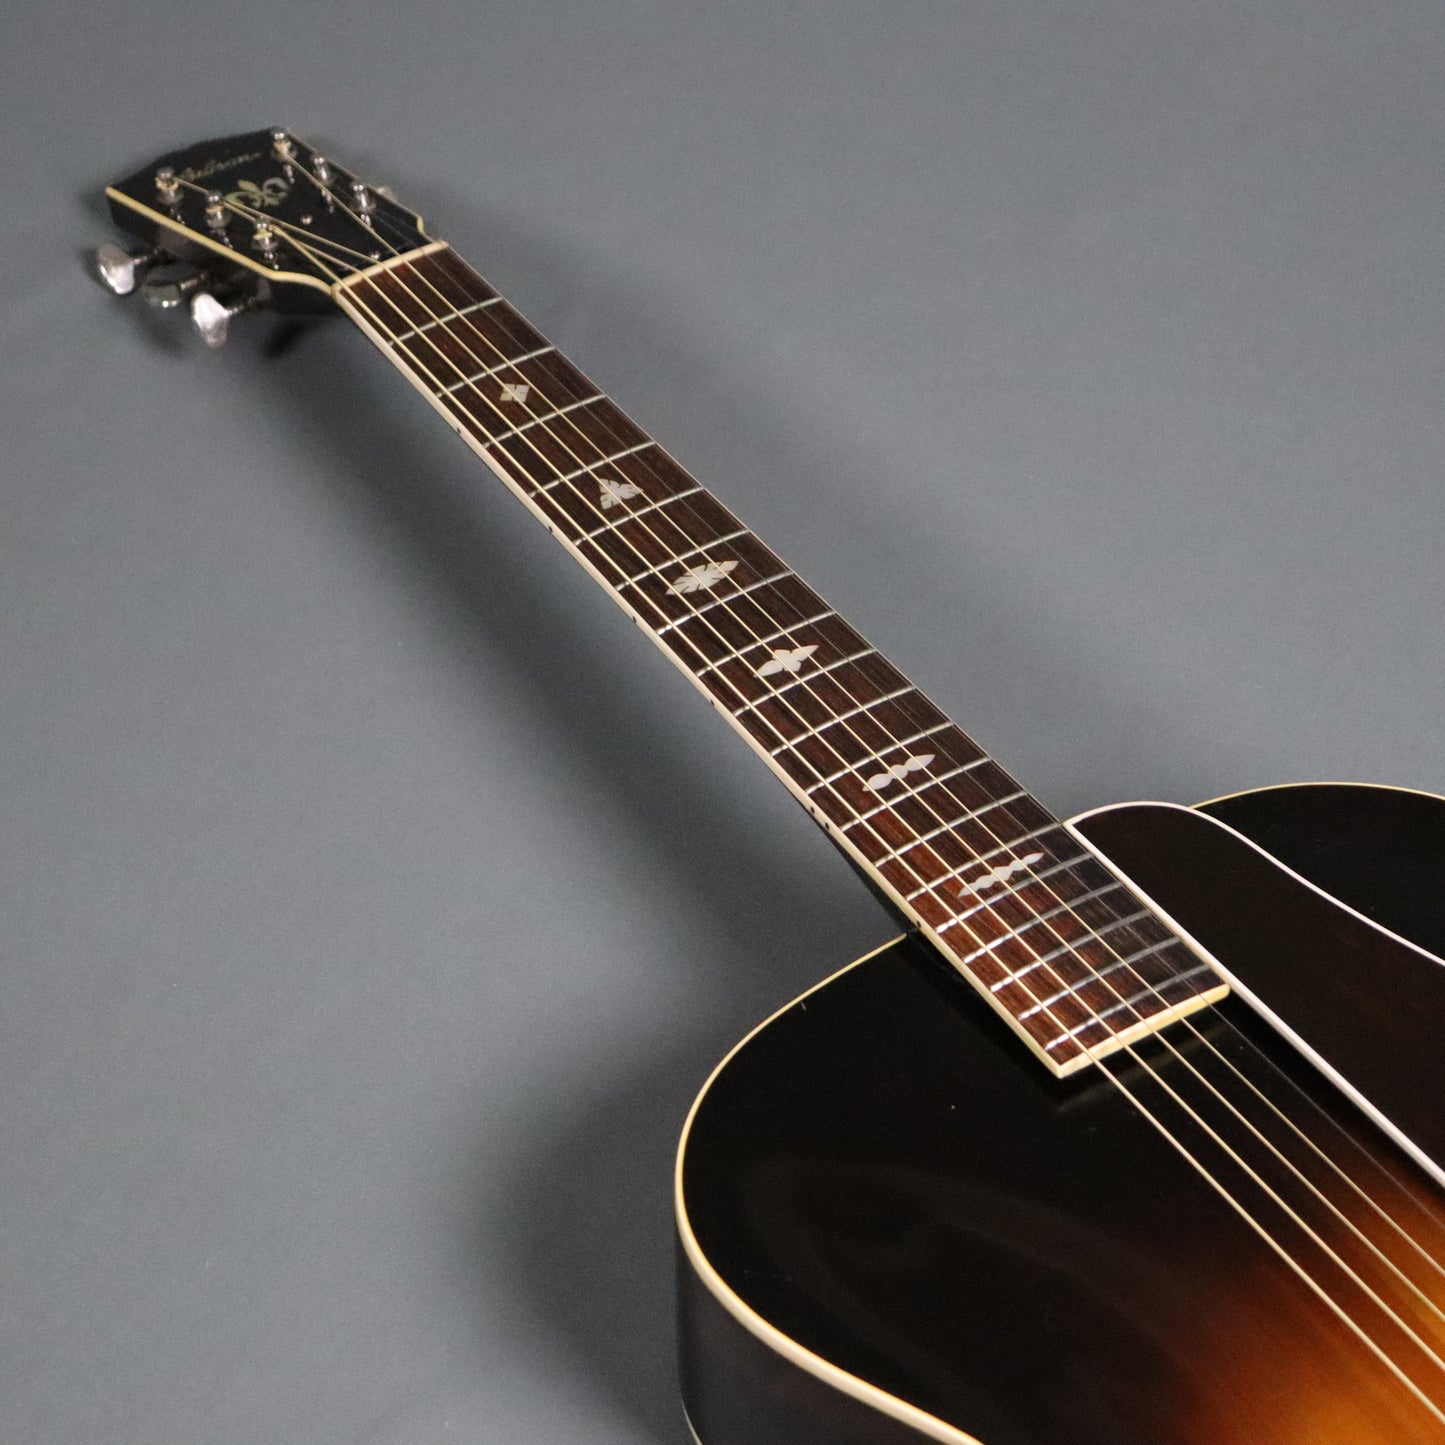 1934 Gibson L-7 16" Loyd Loar Sized Archtop Jazz Guitar